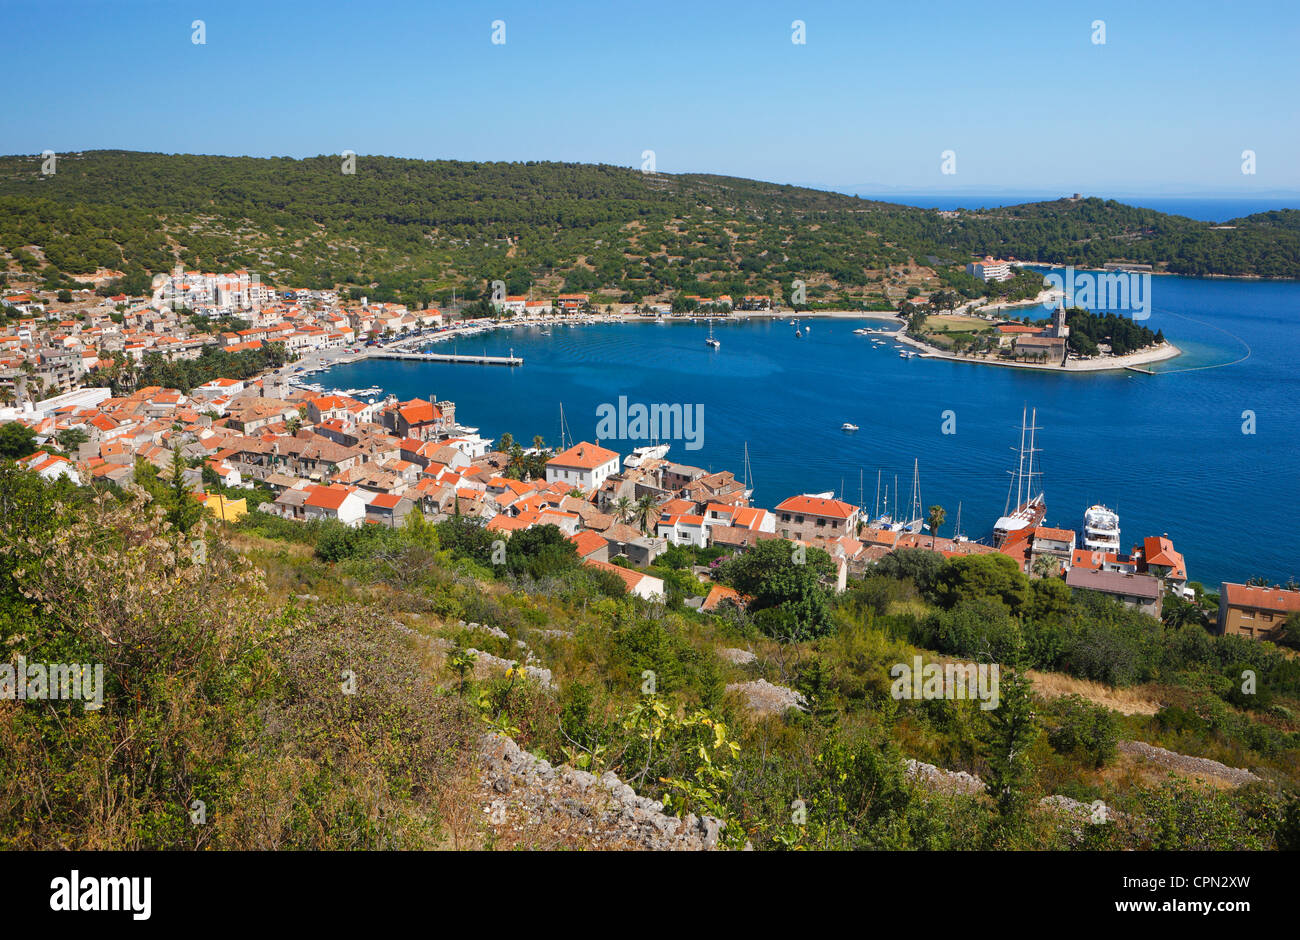 La ville de Vis - île de Vis, Croatie Photo Stock - Alamy